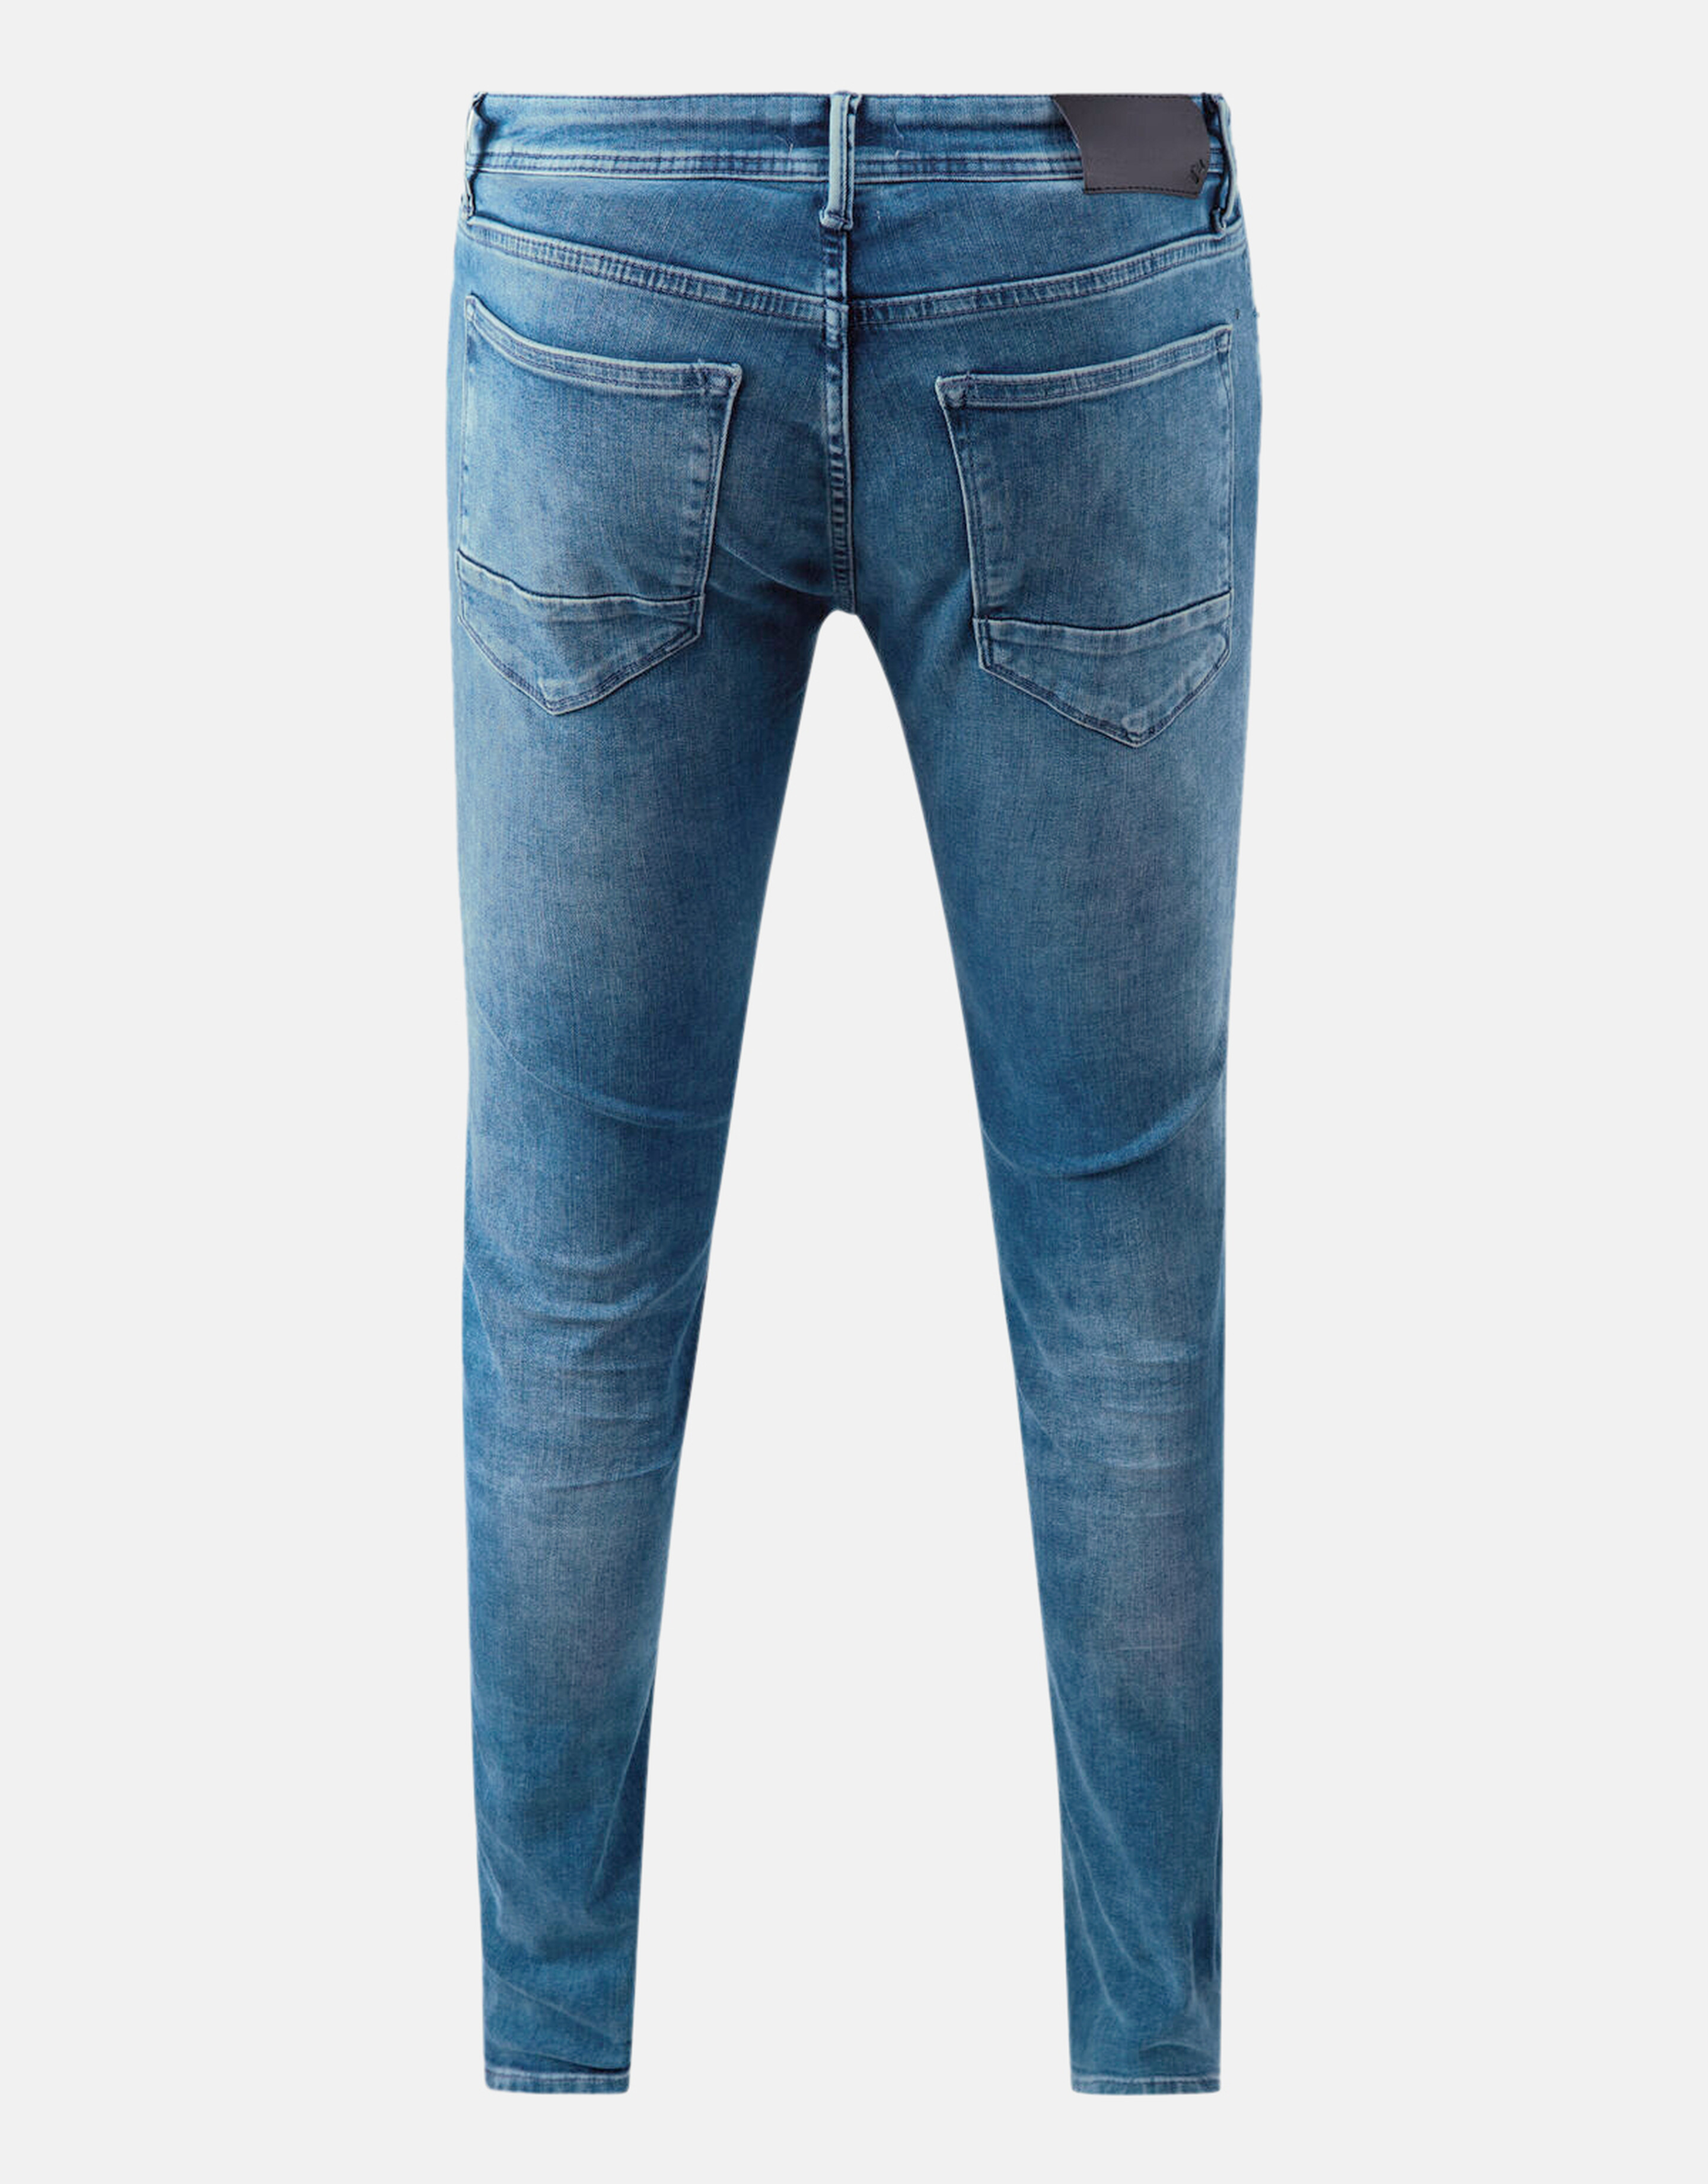 Slim Fit Jeans Mediumstone L36 Refill